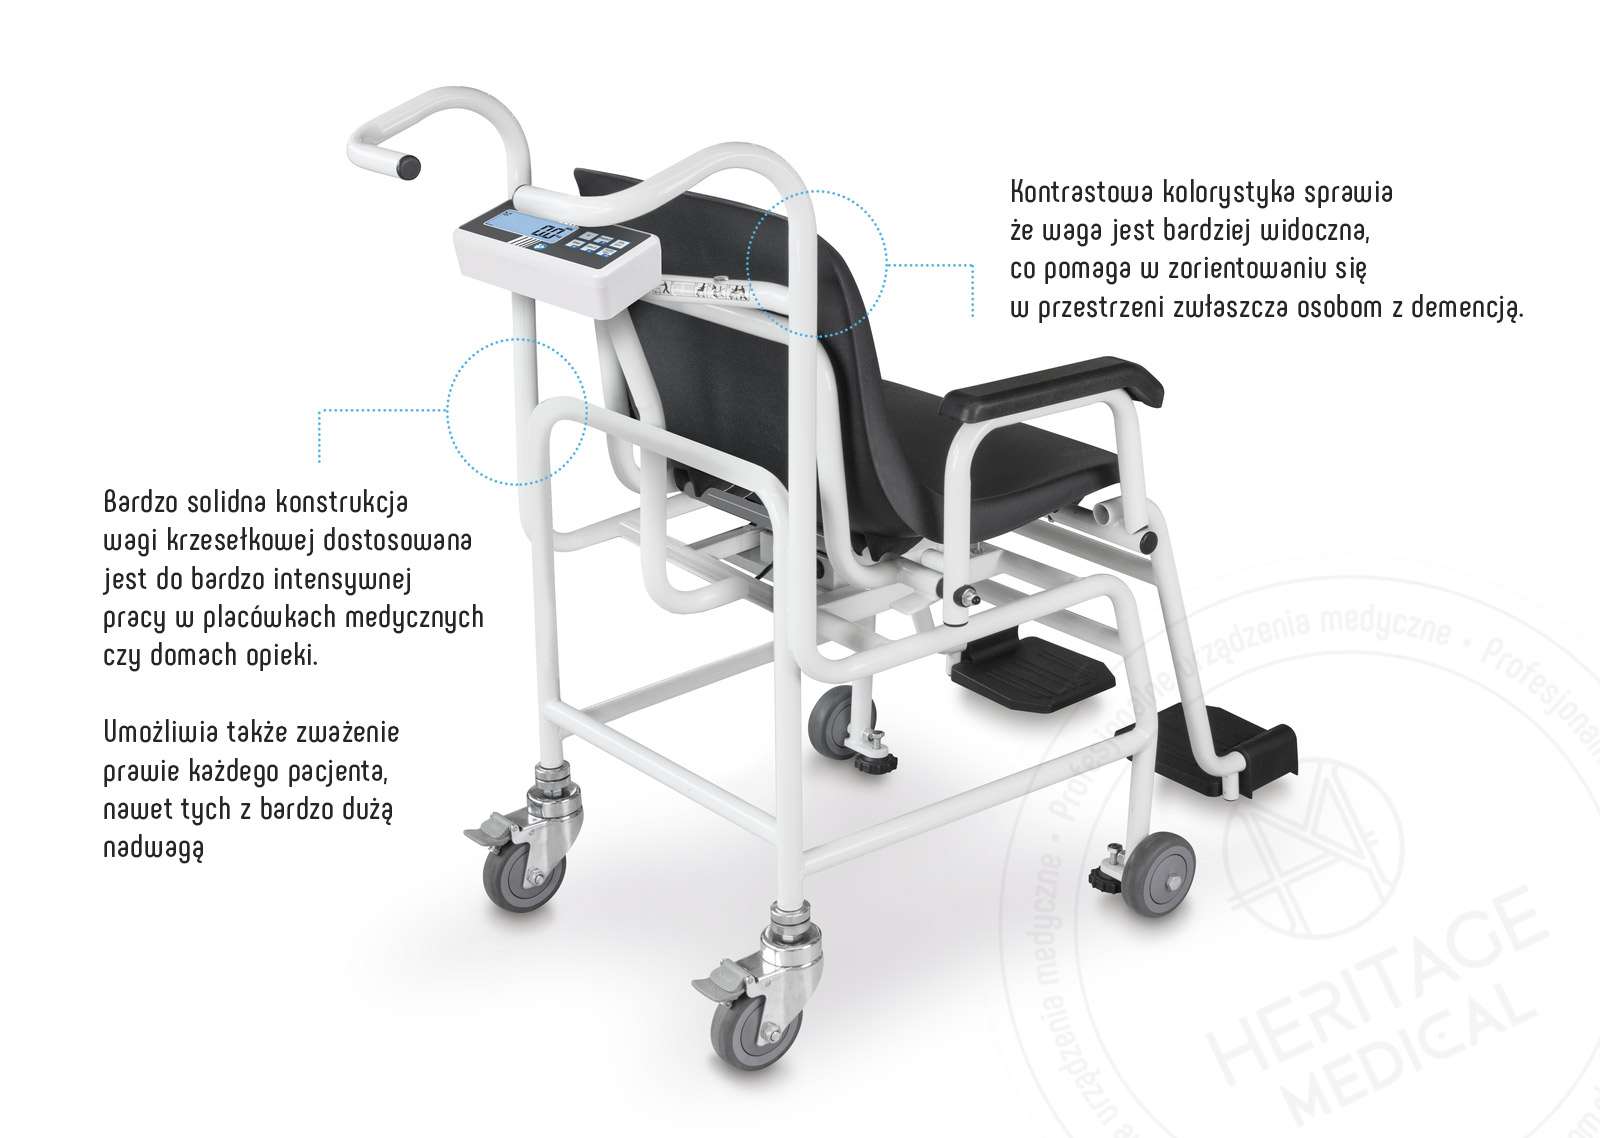 Medyczna waga krzesełkowa KERN MCN dla pacjentów z ograniczoną możliwością poruszania się